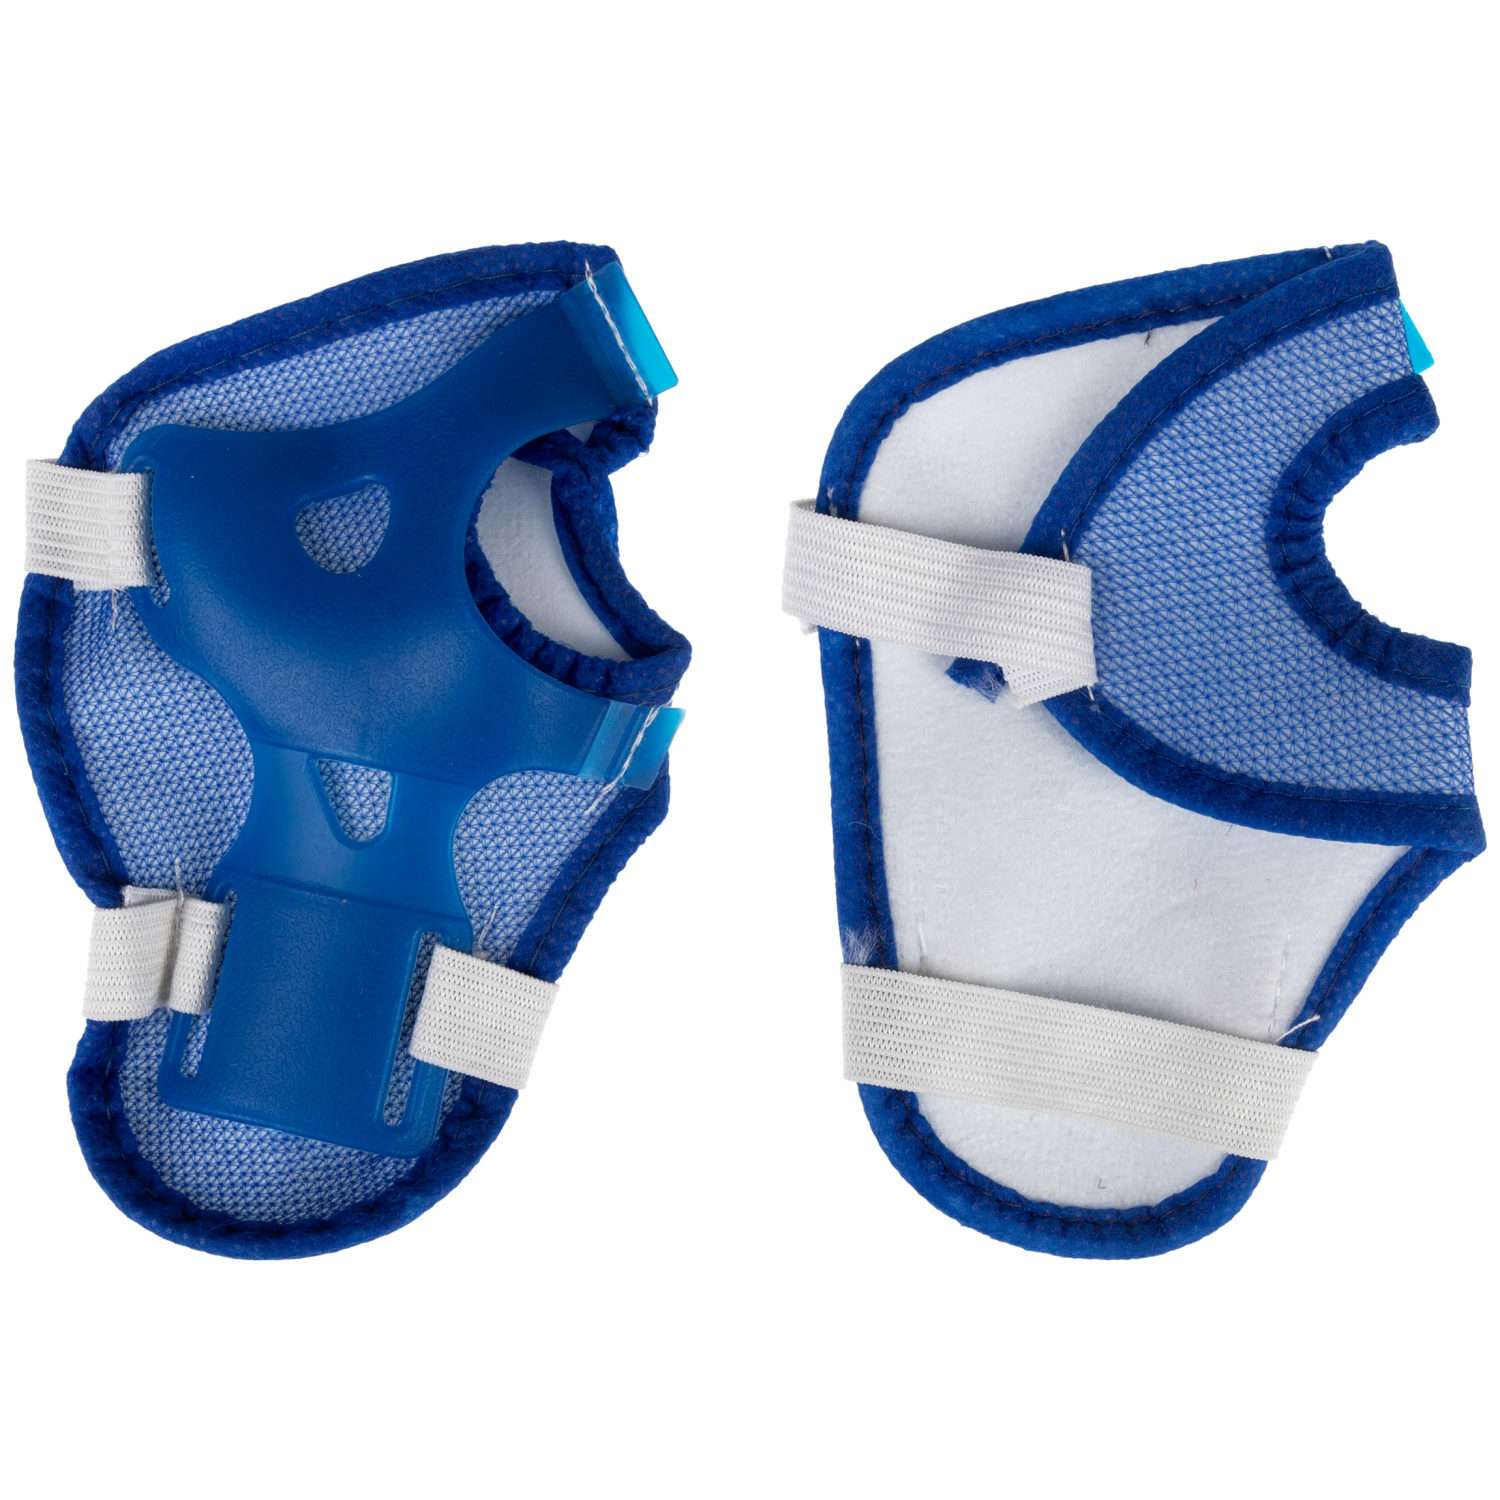 Ролики Navigator детские раздвижные 30 - 33 размер с защитой и шлемом синий - фото 18